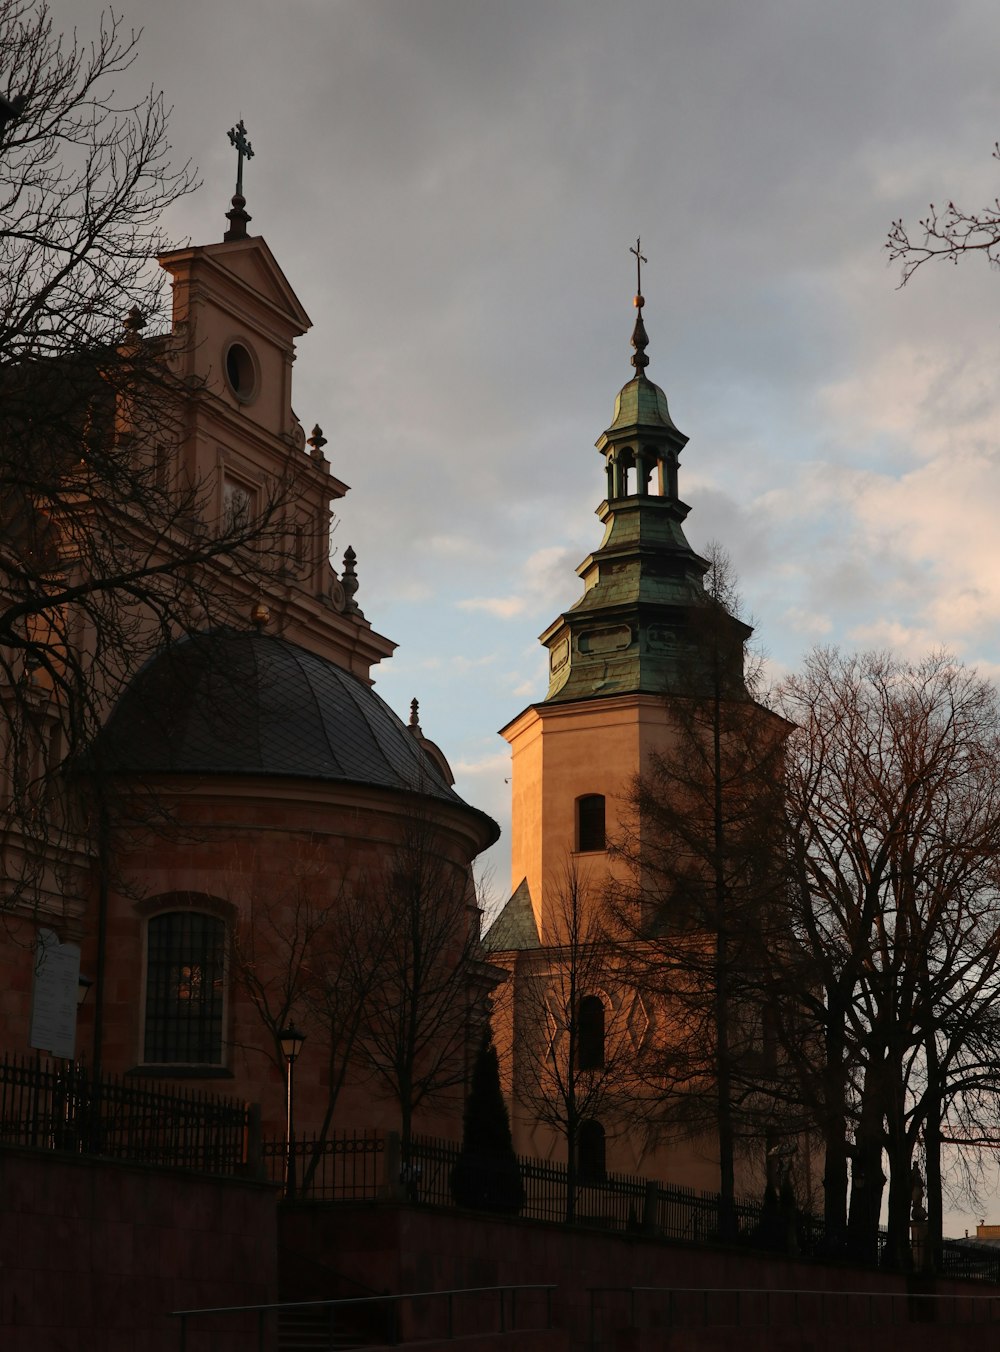 une église avec un clocher et une tour de l’horloge